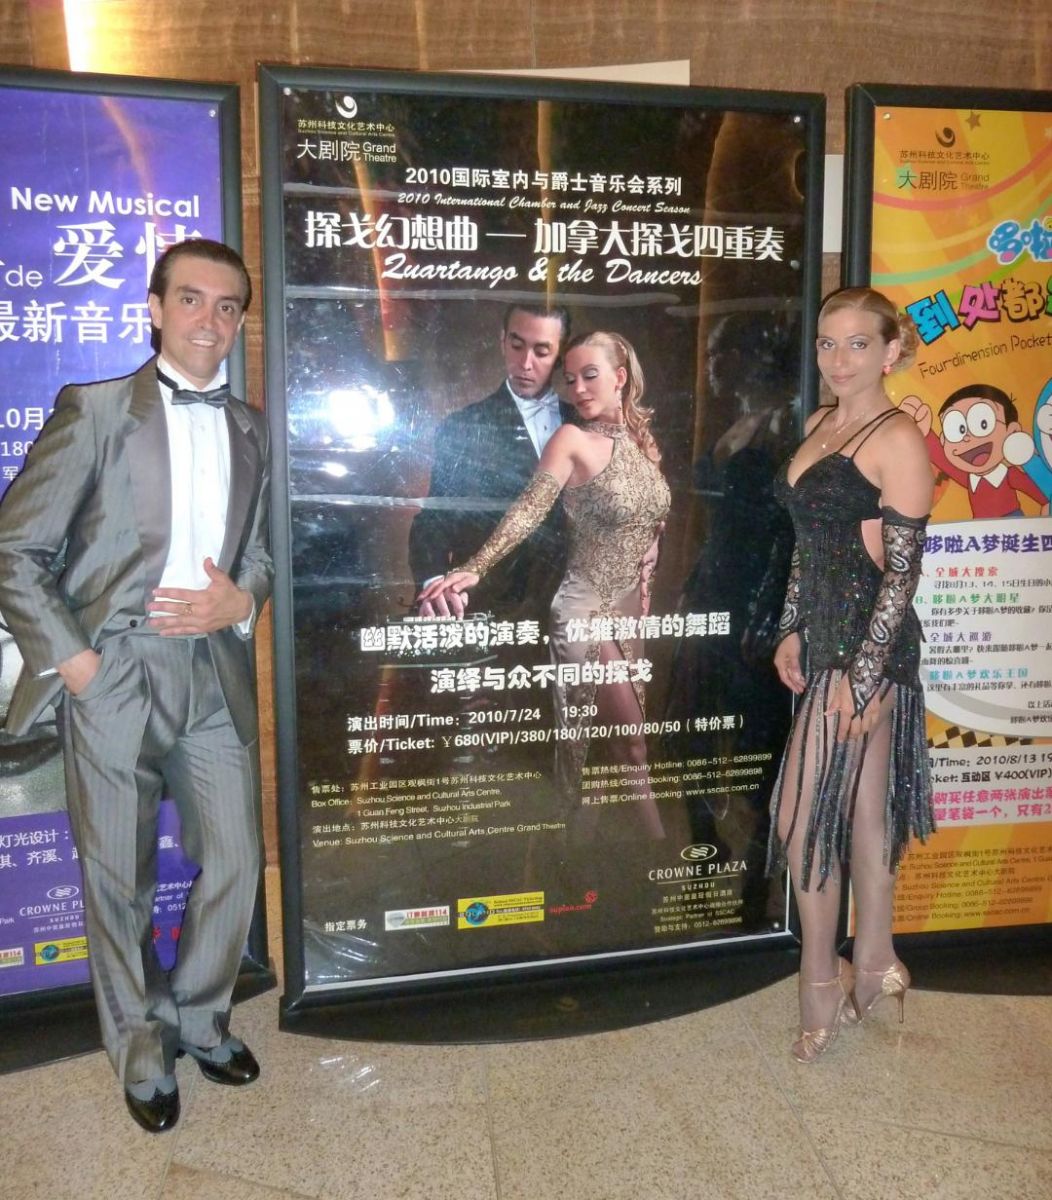 Embajadores del tango argentino, Roxana y Fabián recibirán reconocimiento en el Teatro Regent de Toronto